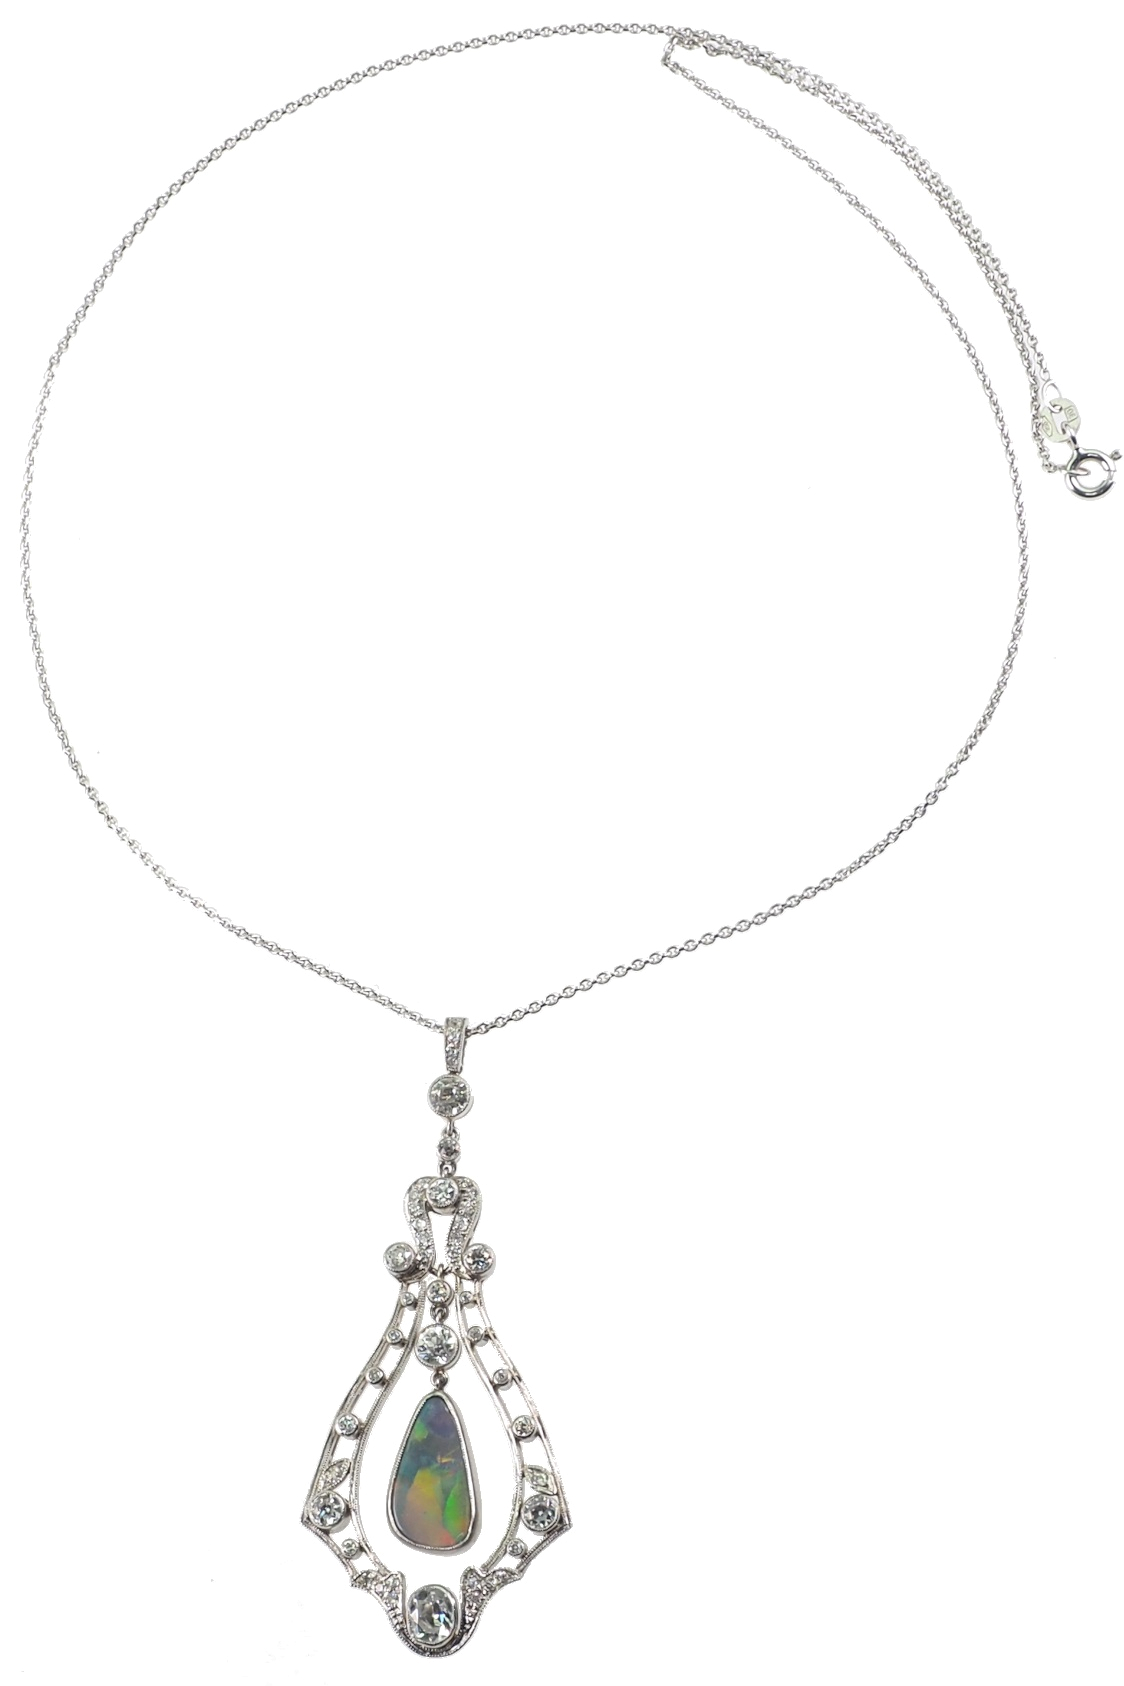 luxurious-antique-jewellery-2827c